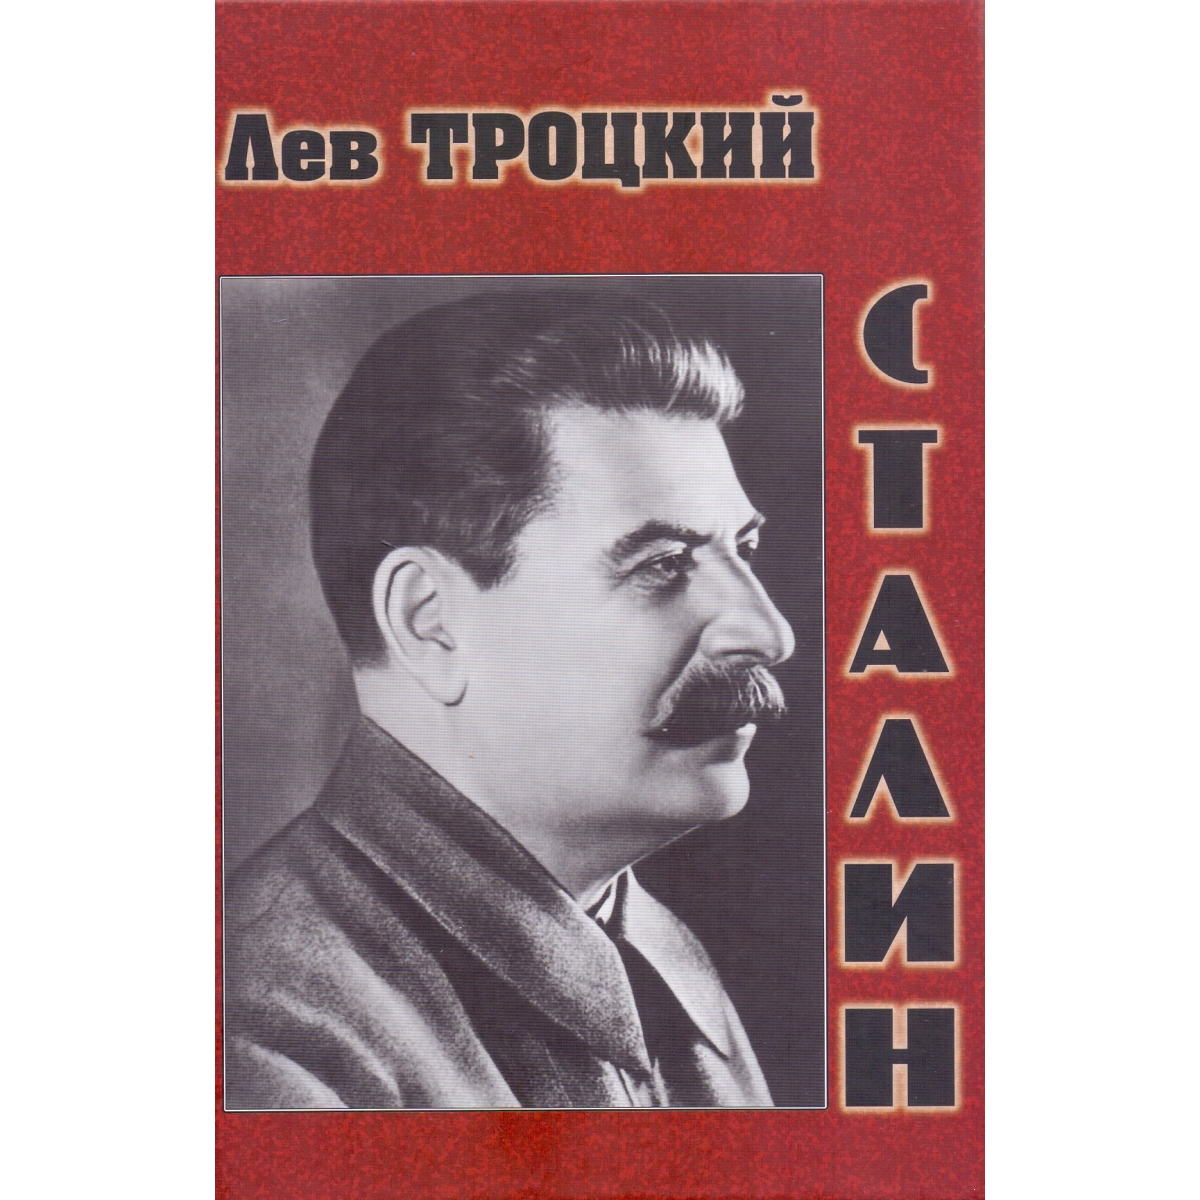 Троцкий Сталин книга